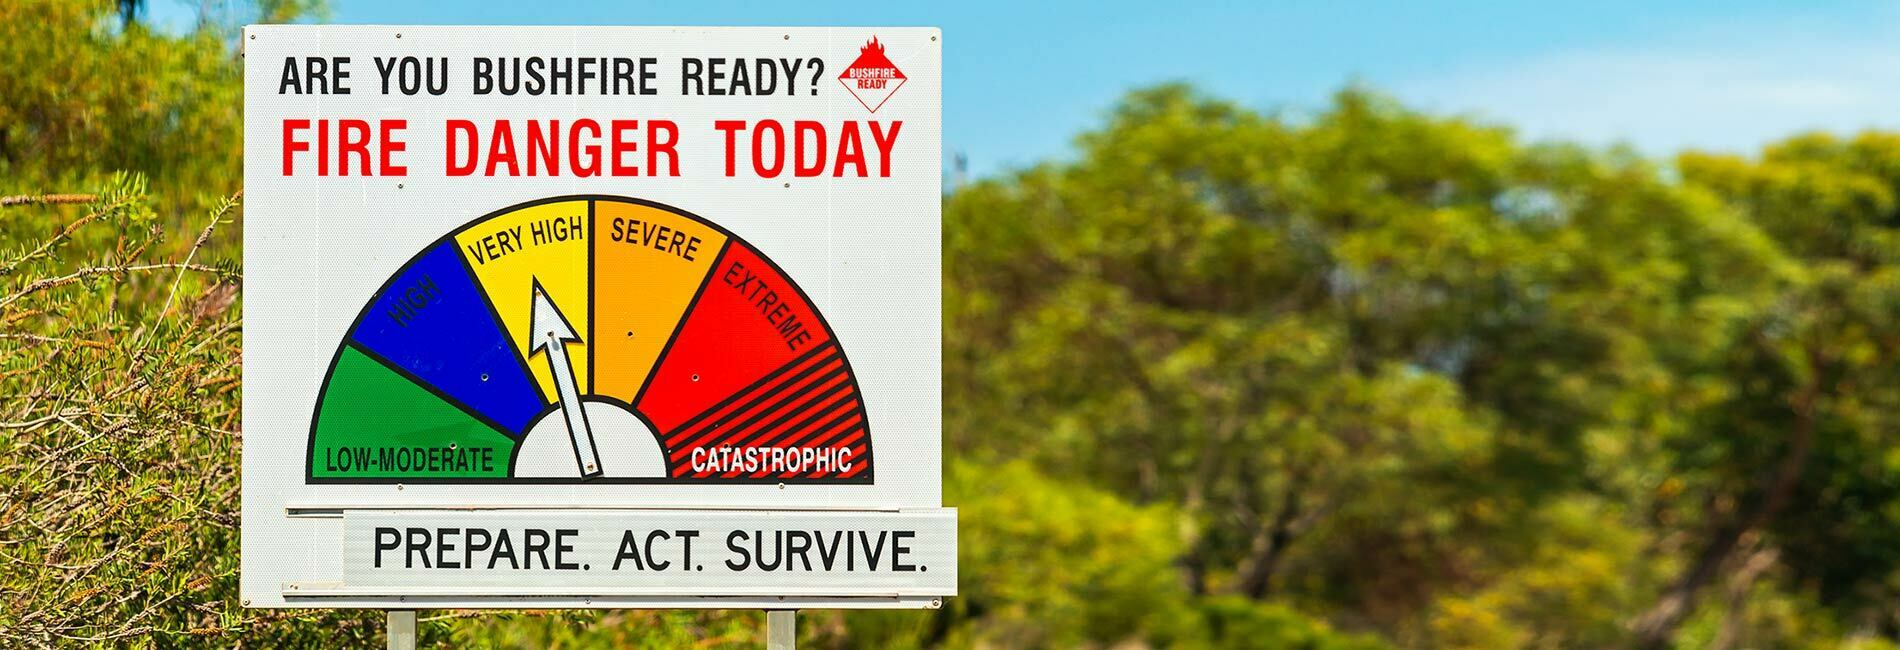 bushfire warning sign